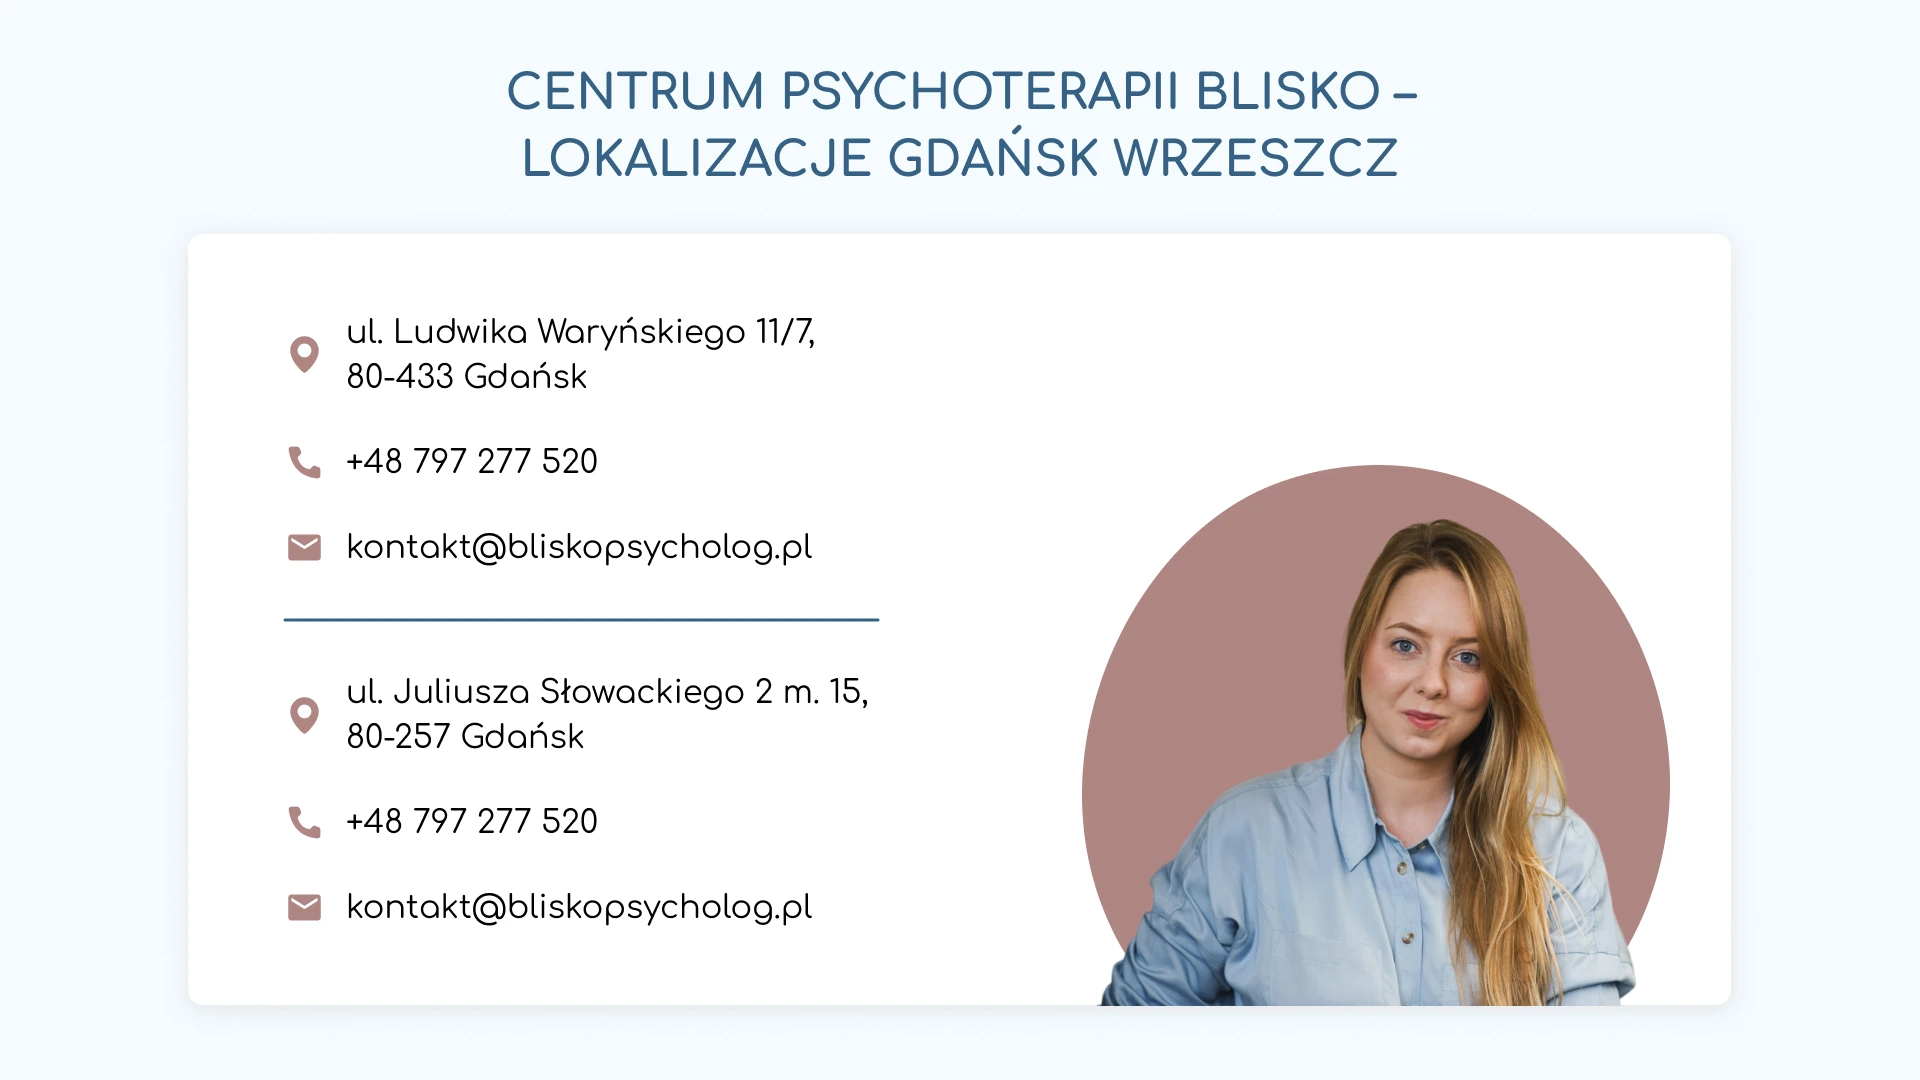 Centrum psychoterapii Blisko - Gdańsk Wrzeszcz - lokalizacje